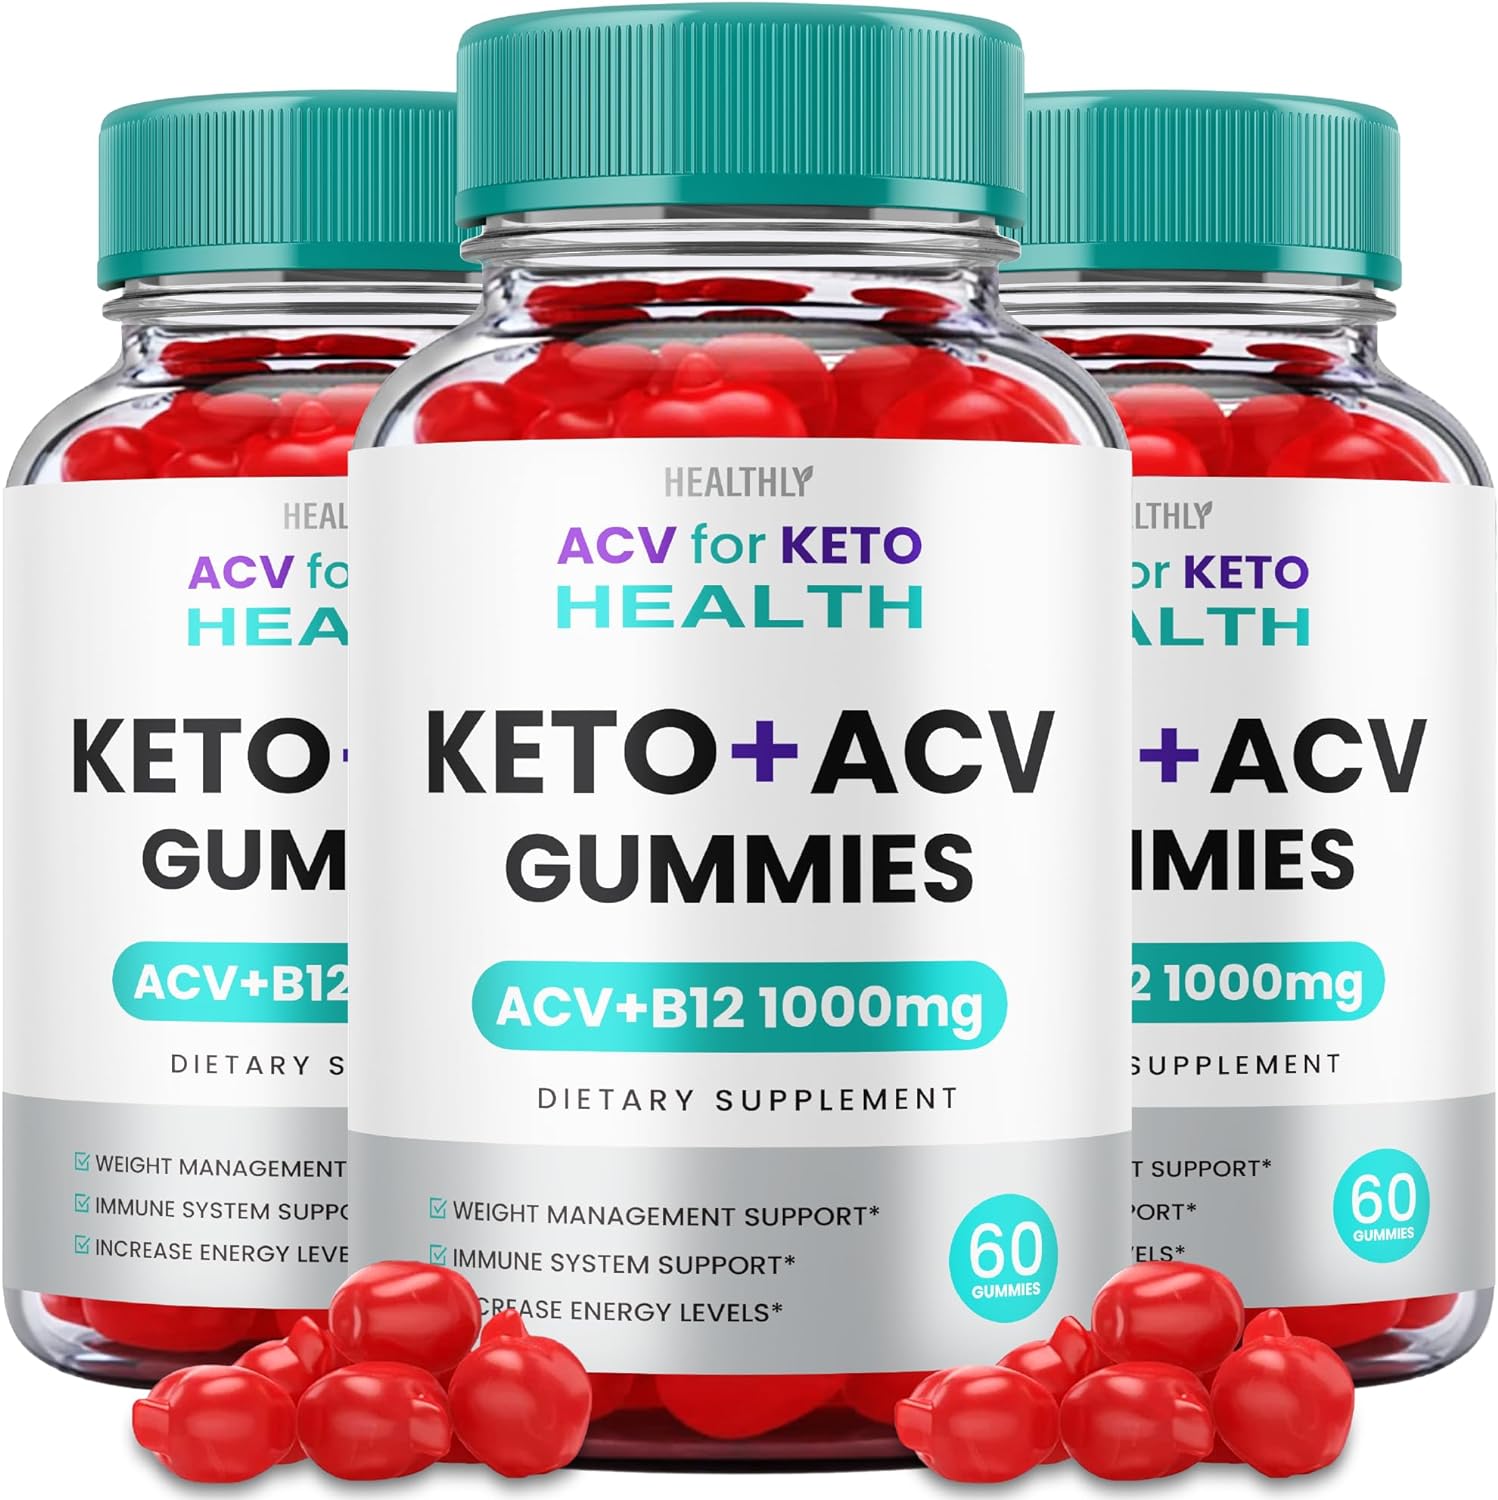 ACV for Keto Health Keto ACV Gummies